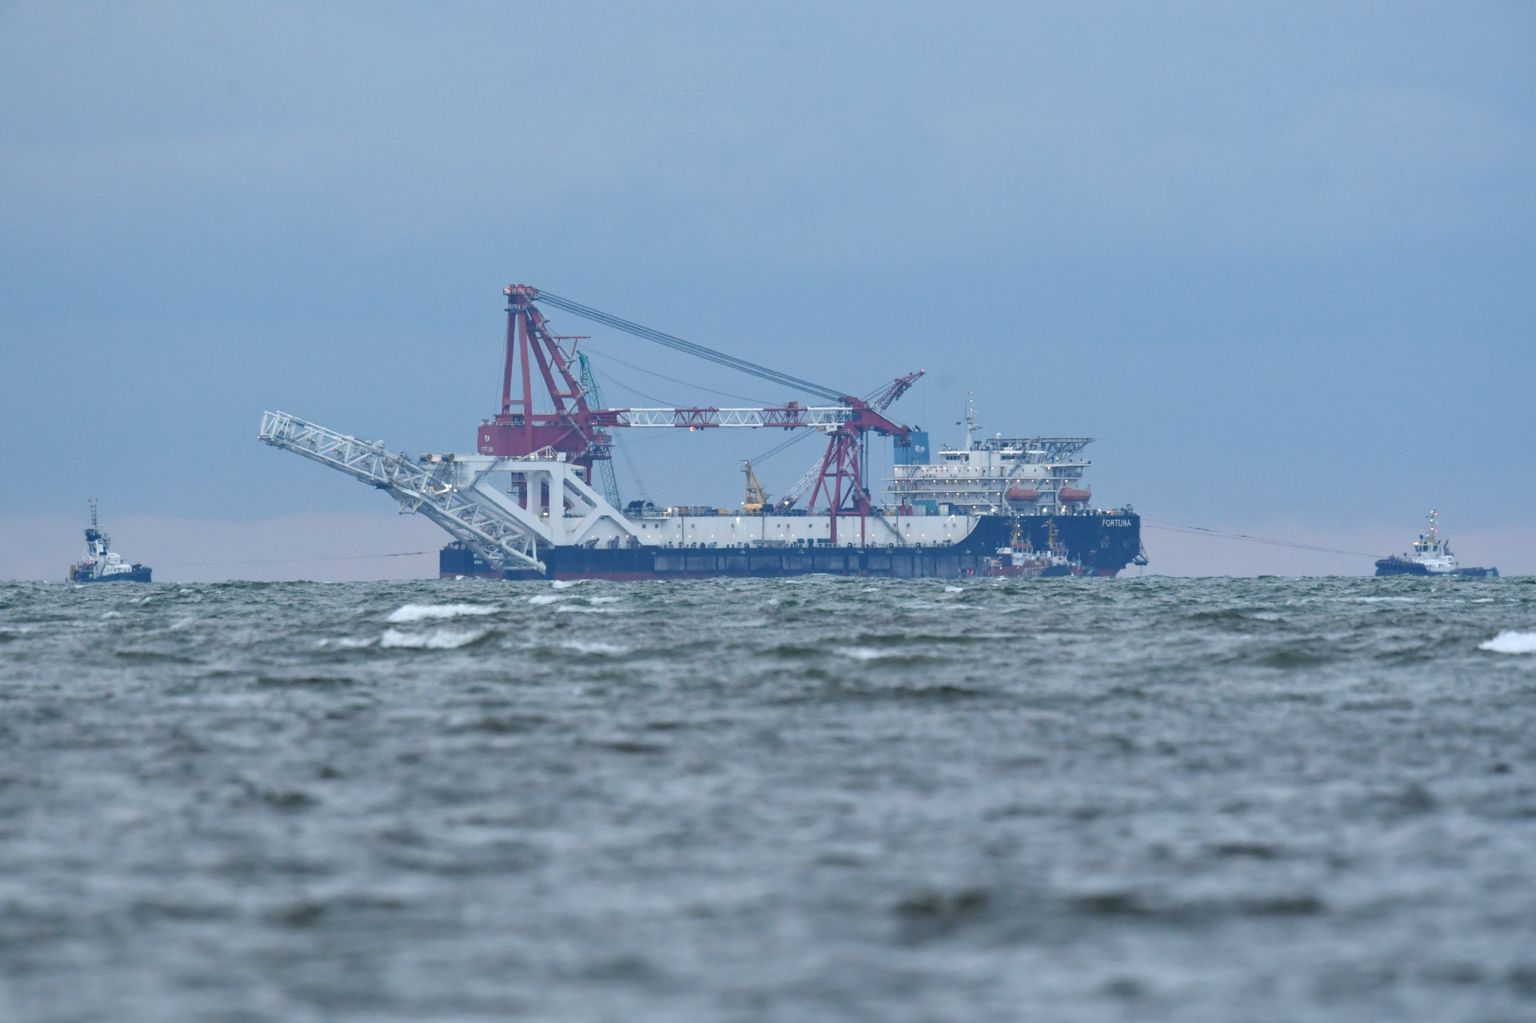 Venemaa maagaasi torujuhtmete panemise laev Fortuna jaanuaris 2021 Saksamaa  Mecklenburgi lahes